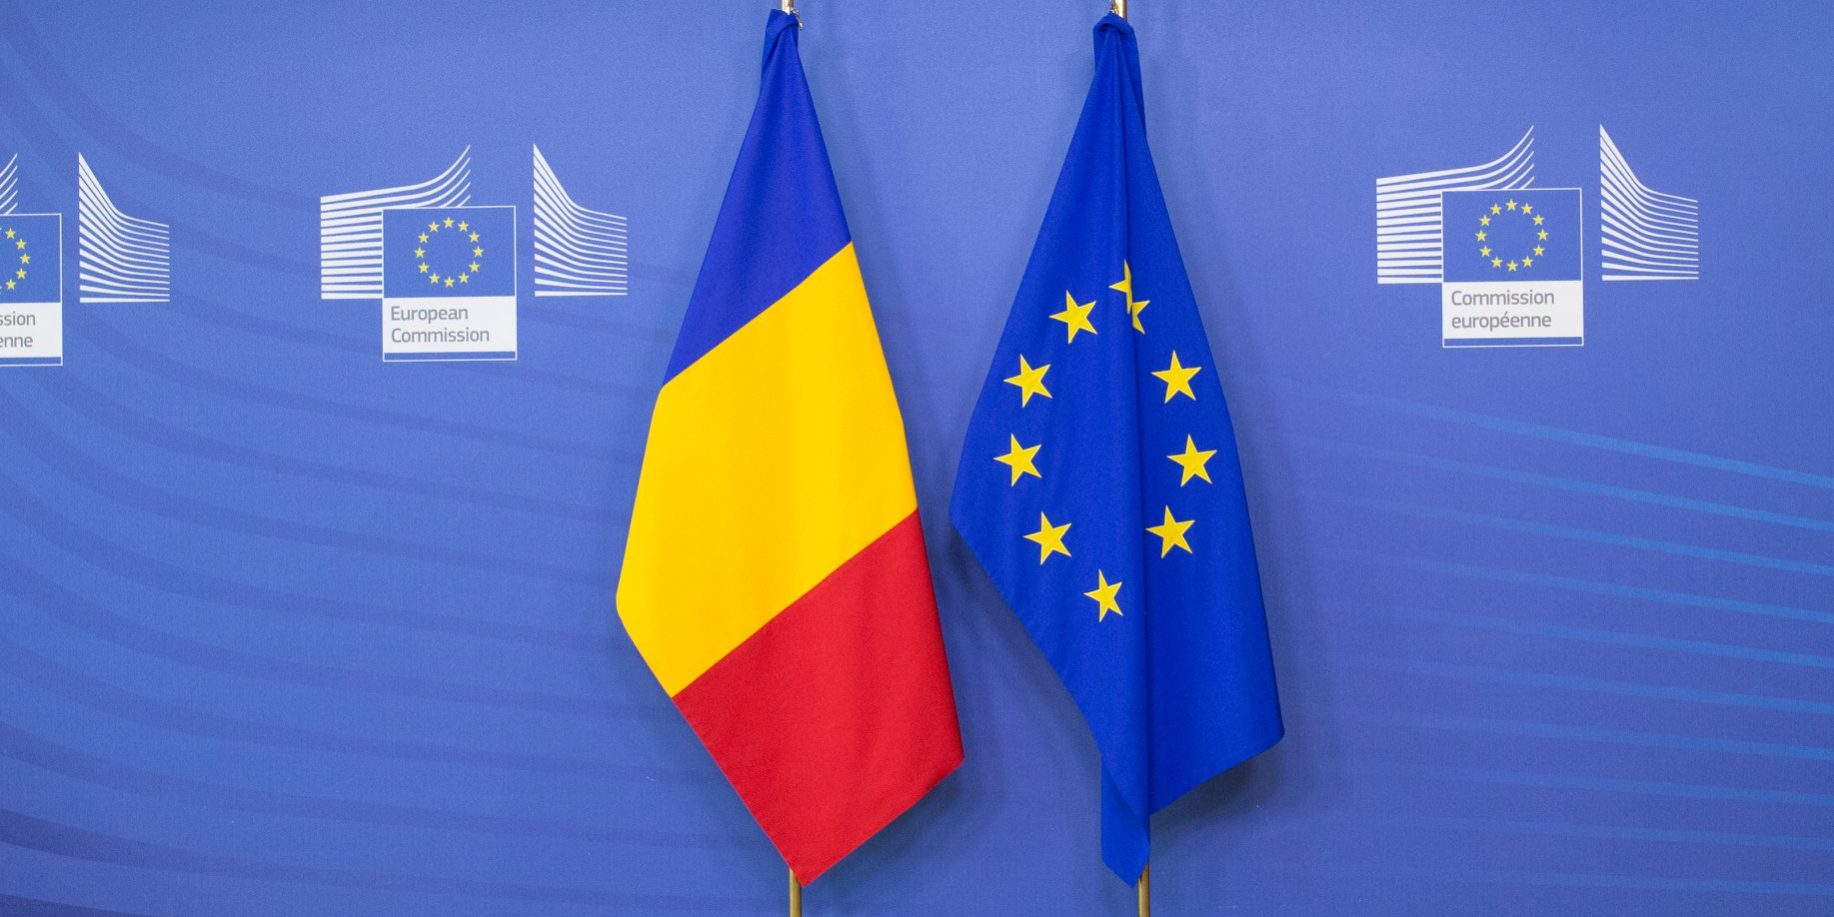 сегодня Румыния — третья по значению в европейской политике страна-член ЕС. Подобная ситуация объясняется сосредоточением членов Европейского парламента.